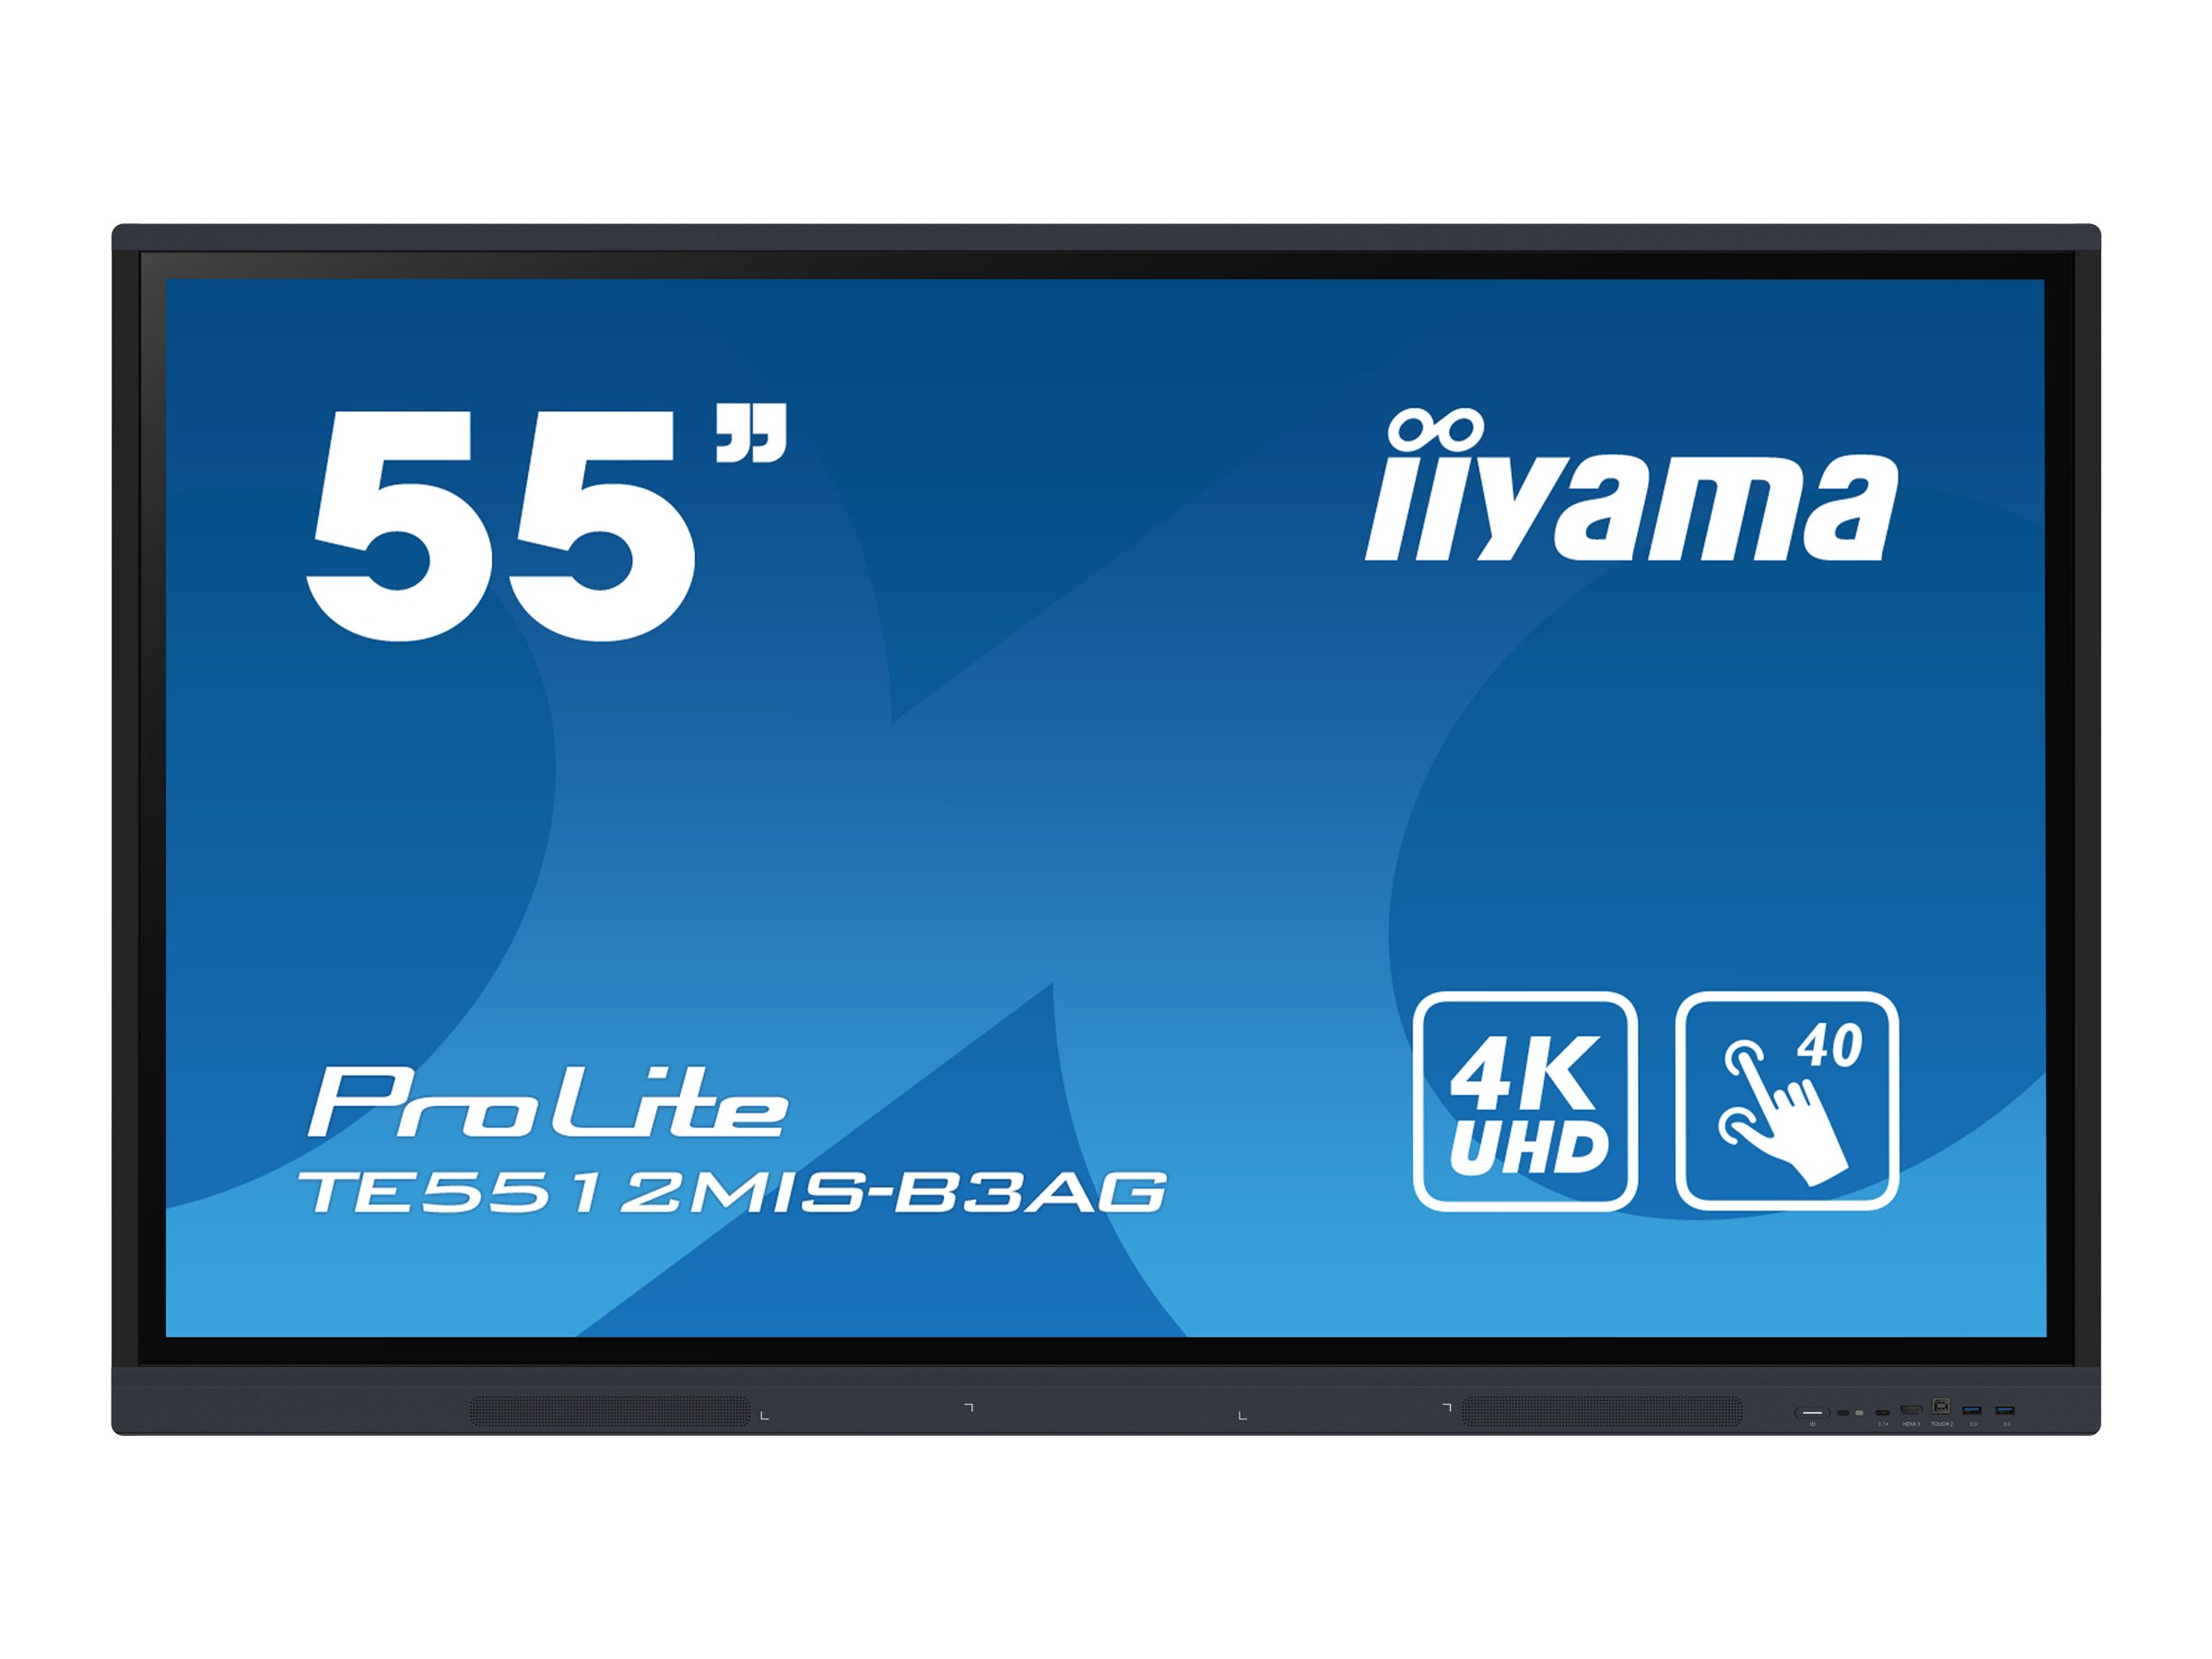 iiyama ProLite TE5512MIS-B3AG - Classe de diagonale 55" (54.6" visualisable) écran LCD rétro-éclairé par LED - signalétique numérique interactive - avec écran tactile (multi-touch) / capacité PC en option (slot-in) - 4K UHD (2160p) 3840 x 2160 - cadre noir avec finition mate - avec Module WiFi iiyama (OWM002) - TE5512MIS-B3AG - Écrans de signalisation numérique